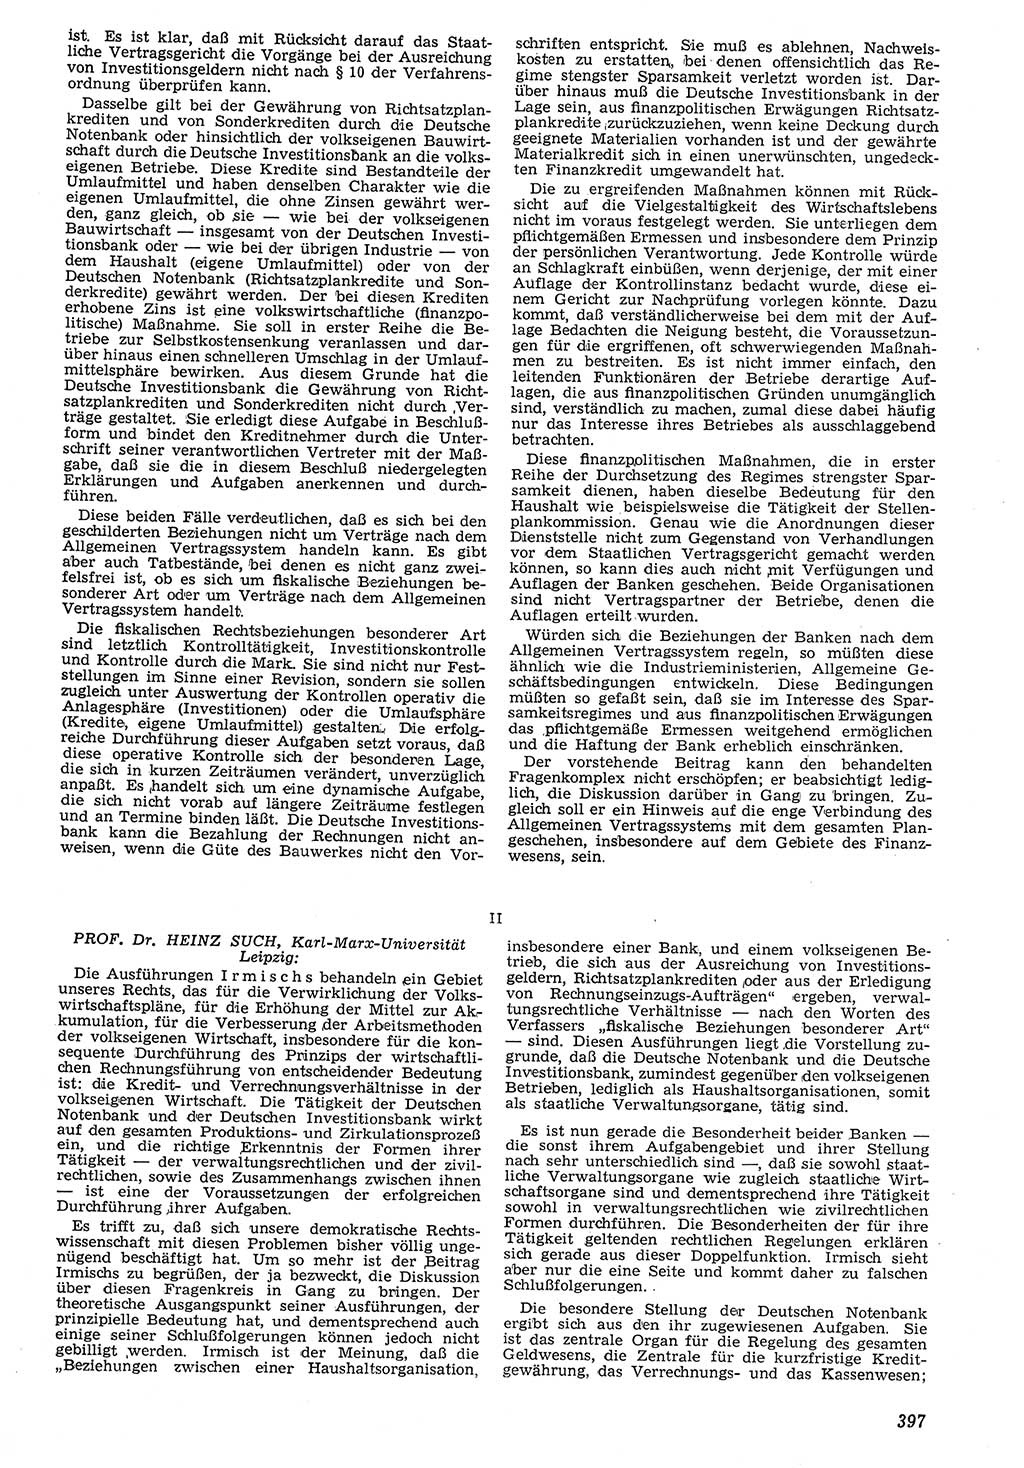 Neue Justiz (NJ), Zeitschrift für Recht und Rechtswissenschaft [Deutsche Demokratische Republik (DDR)], 7. Jahrgang 1953, Seite 397 (NJ DDR 1953, S. 397)